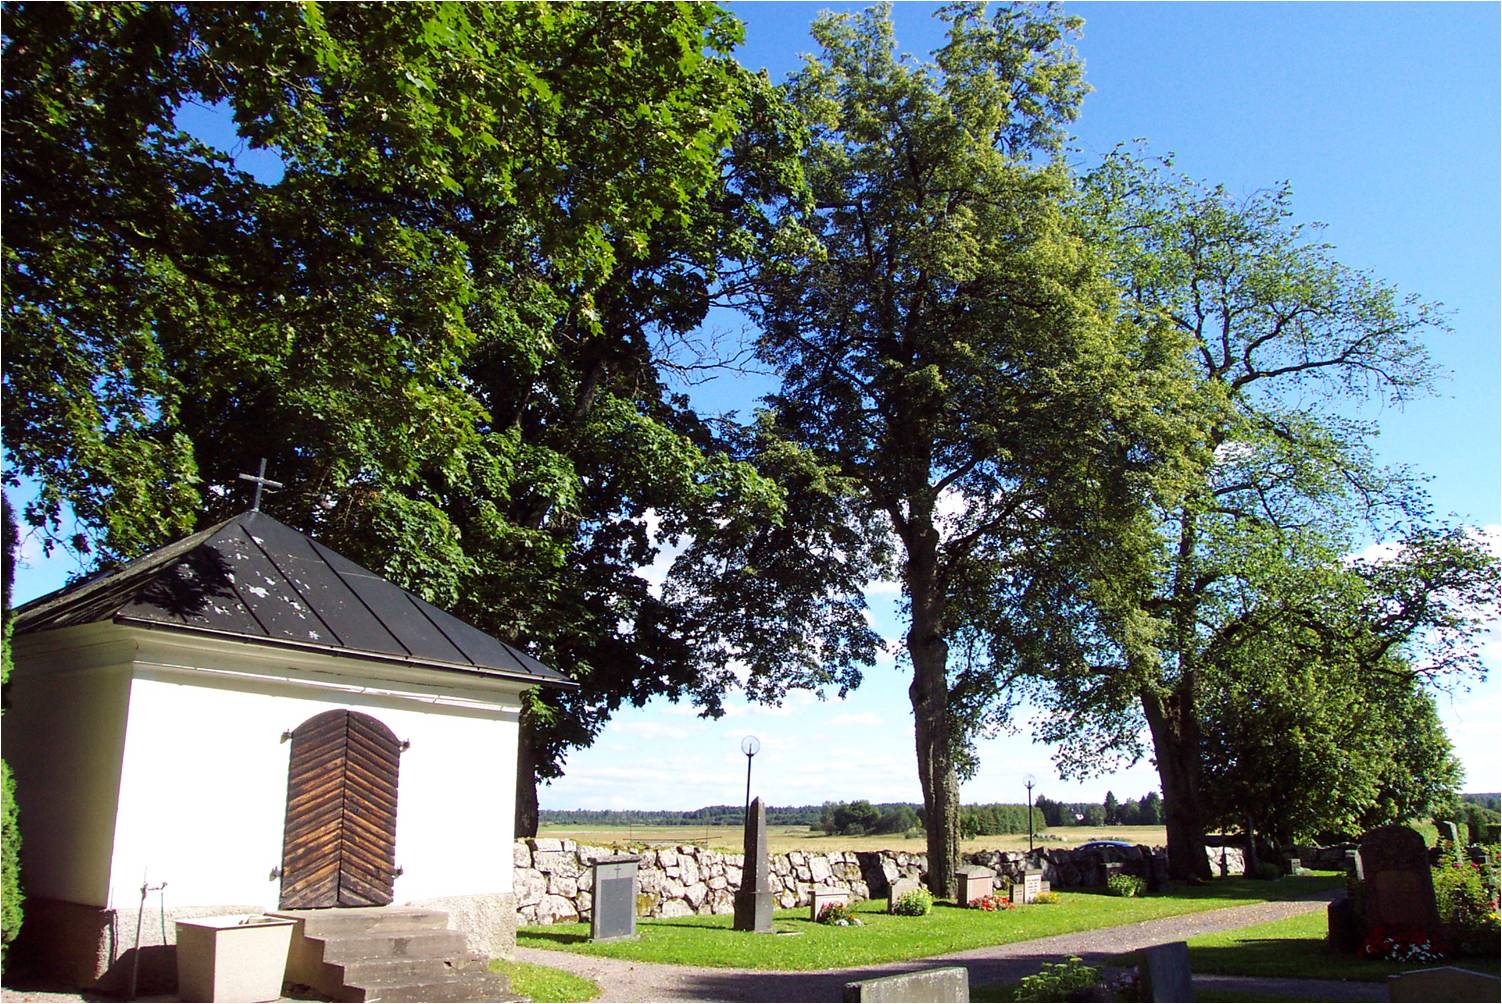 Det före detta gravkoret och trädkransen på den äldre kyrkogårdsdelen